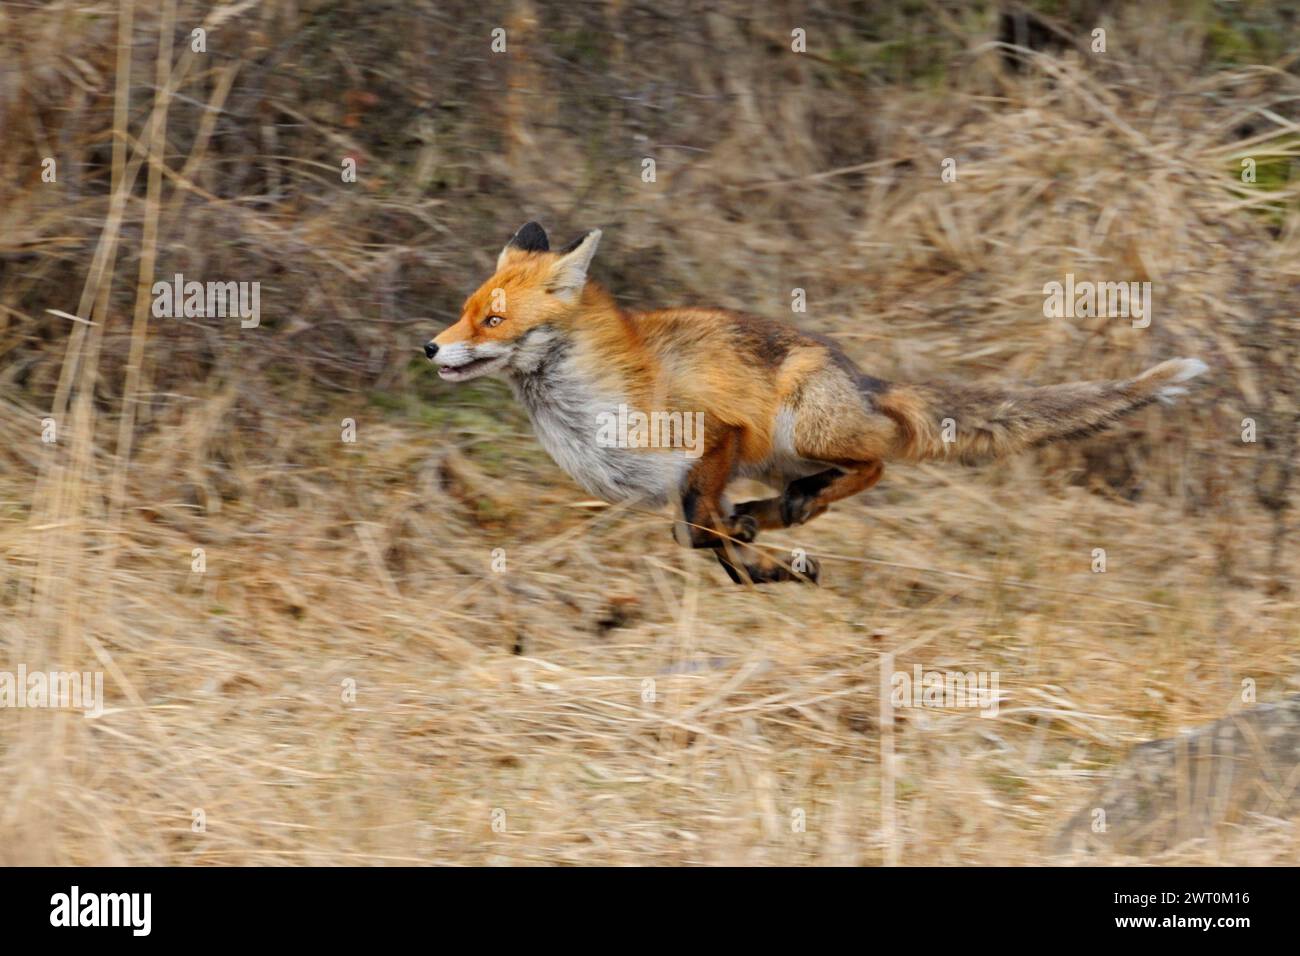 Rotfuchs ( Vulpes vulpes ) auf der Flucht am Waldrand entlang, durch Schilfgras, flüchtendes Tier, in Bewegung, Schwenktechnik, Tierwelt, Europa. Stockfoto